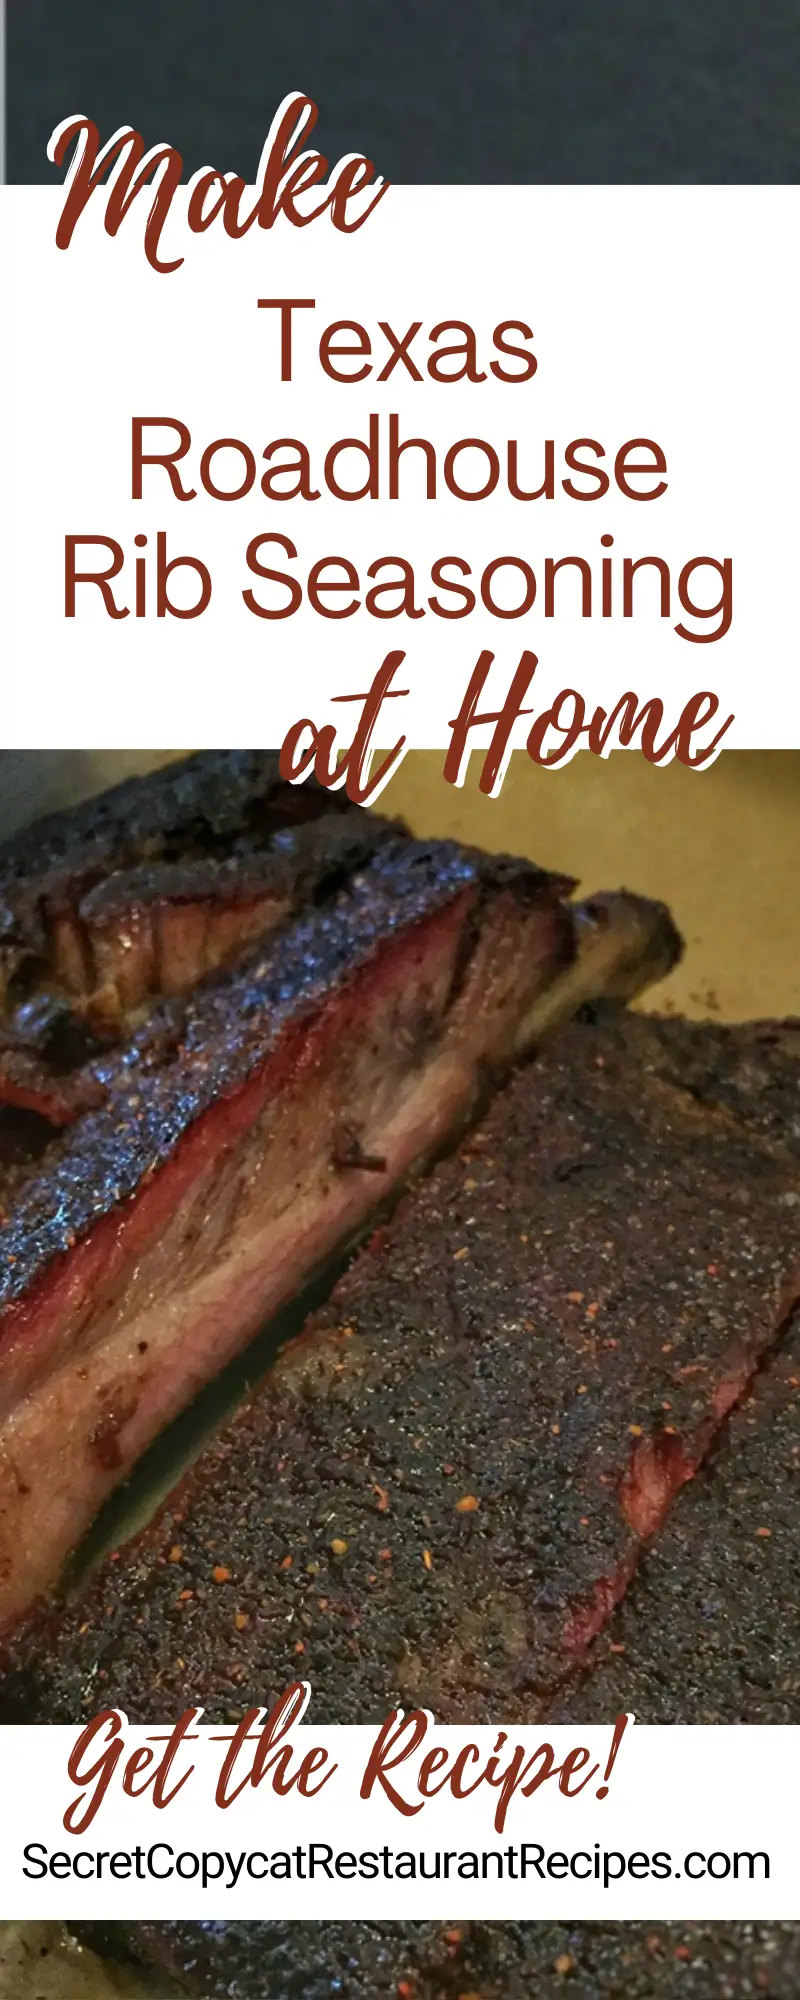 Texas Roadhouse Rib Seasoning Recipe